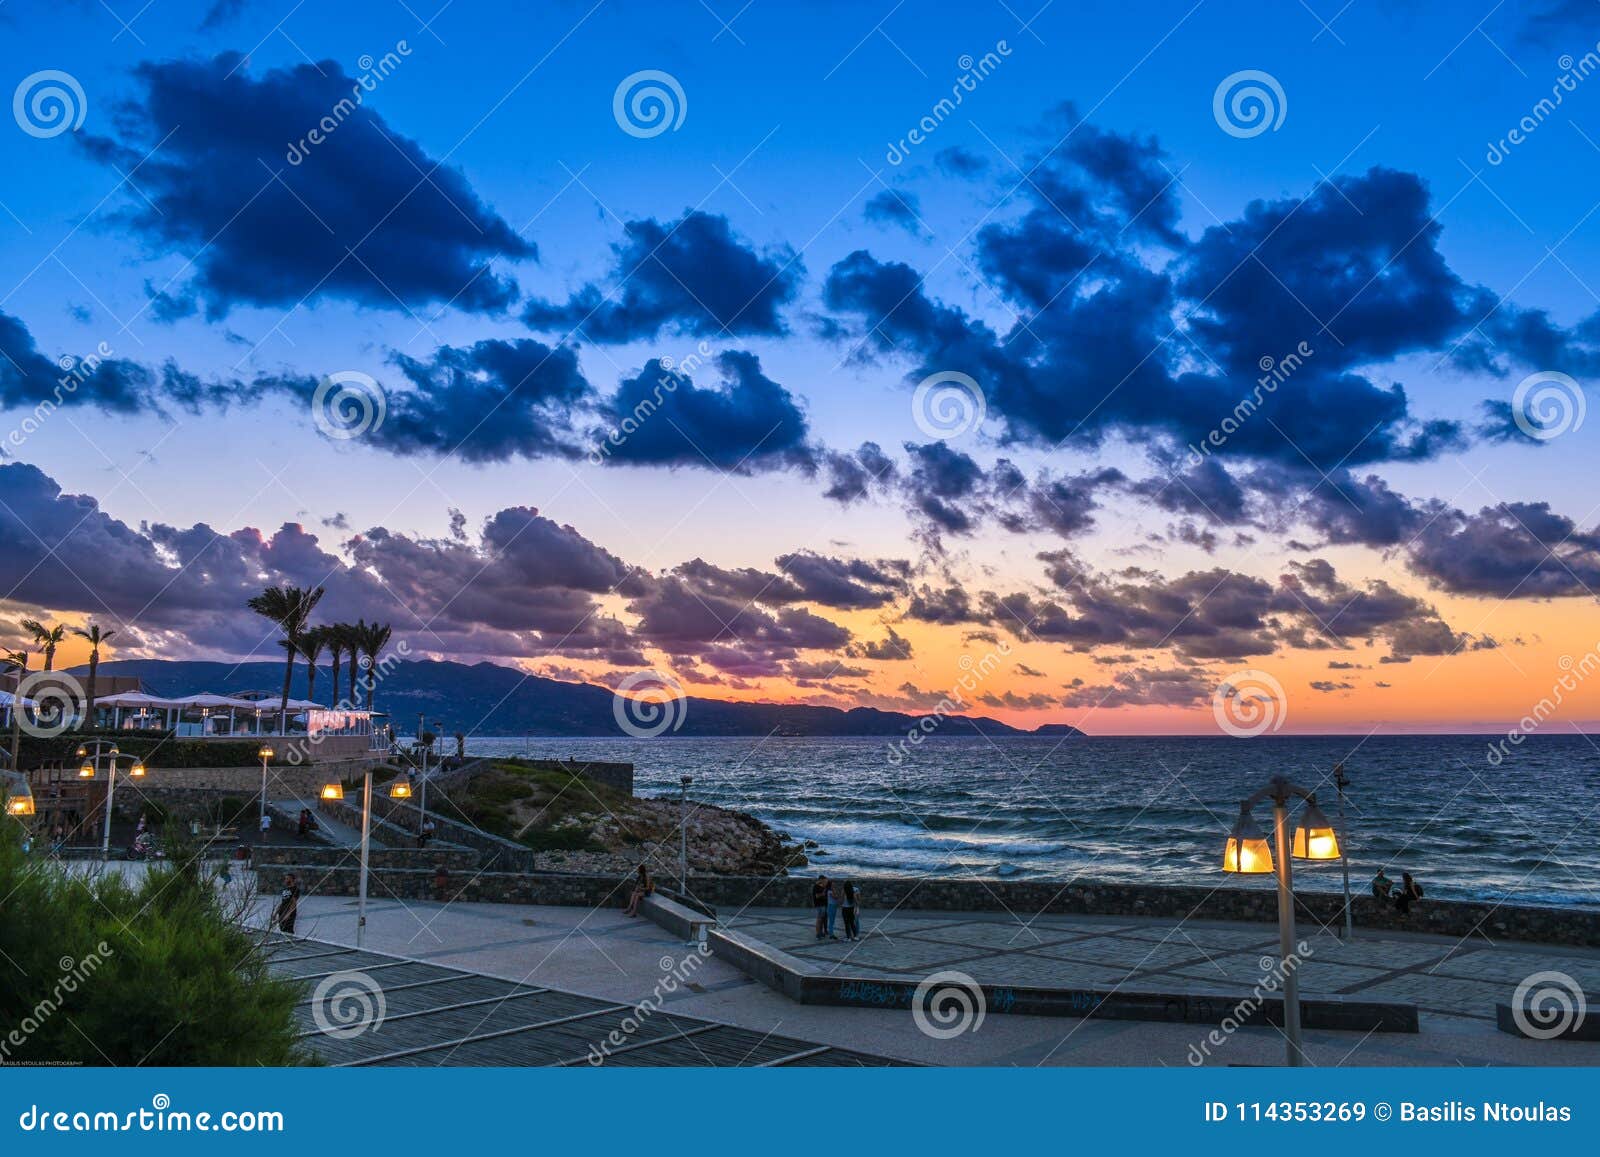 sunset in heraklion crete greece